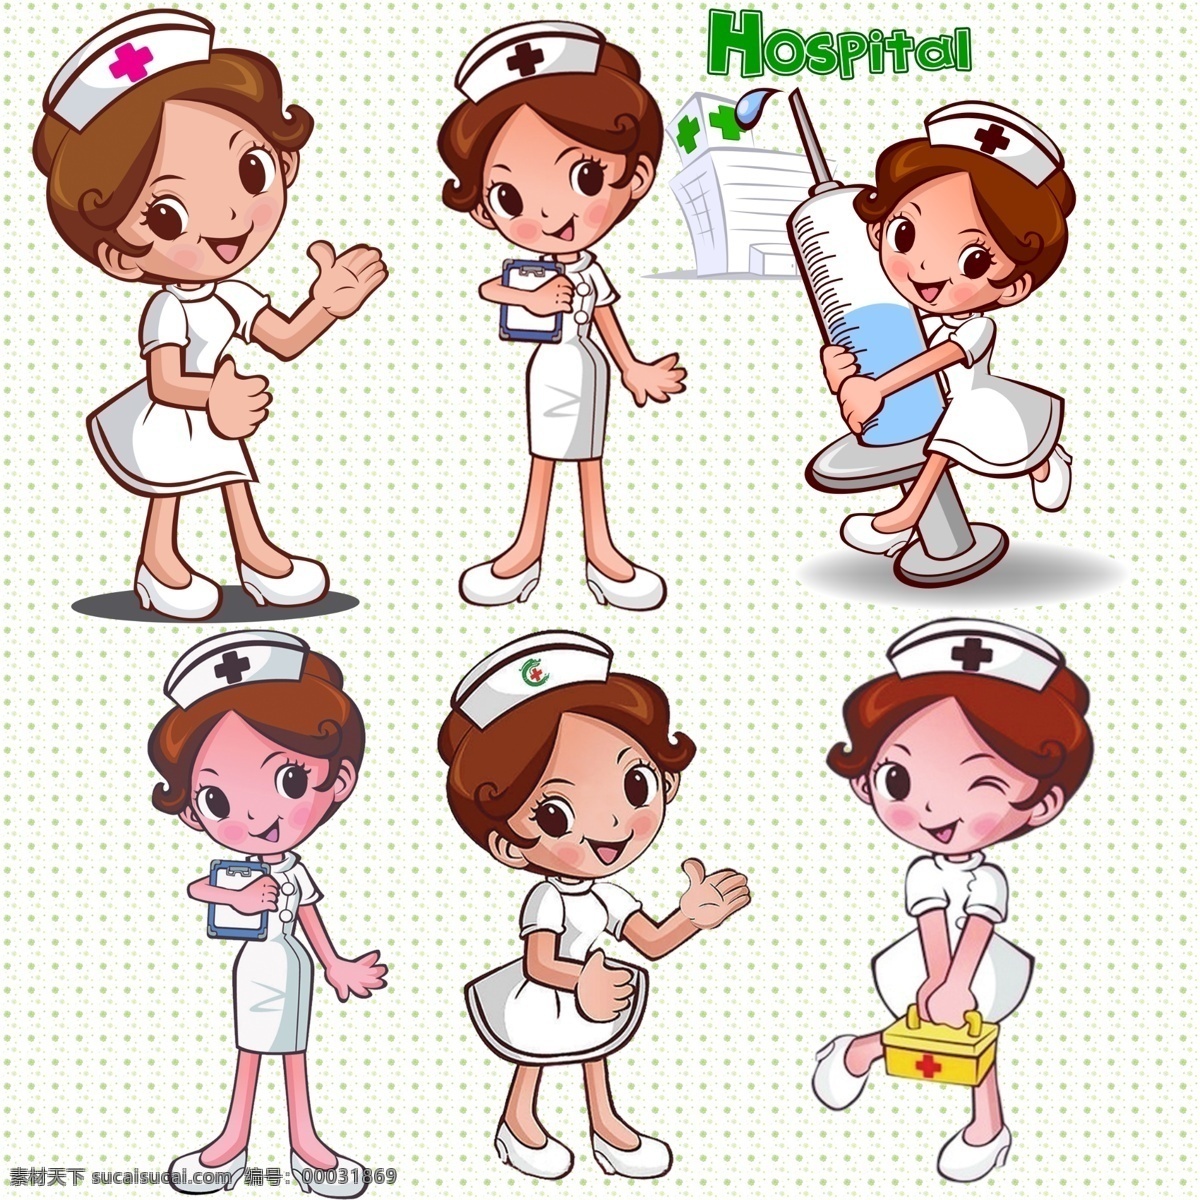 卡通护士 模版下载 卡通 医生 护士 可爱 插画 医院 源文件 护士素材下载 护士模板下载